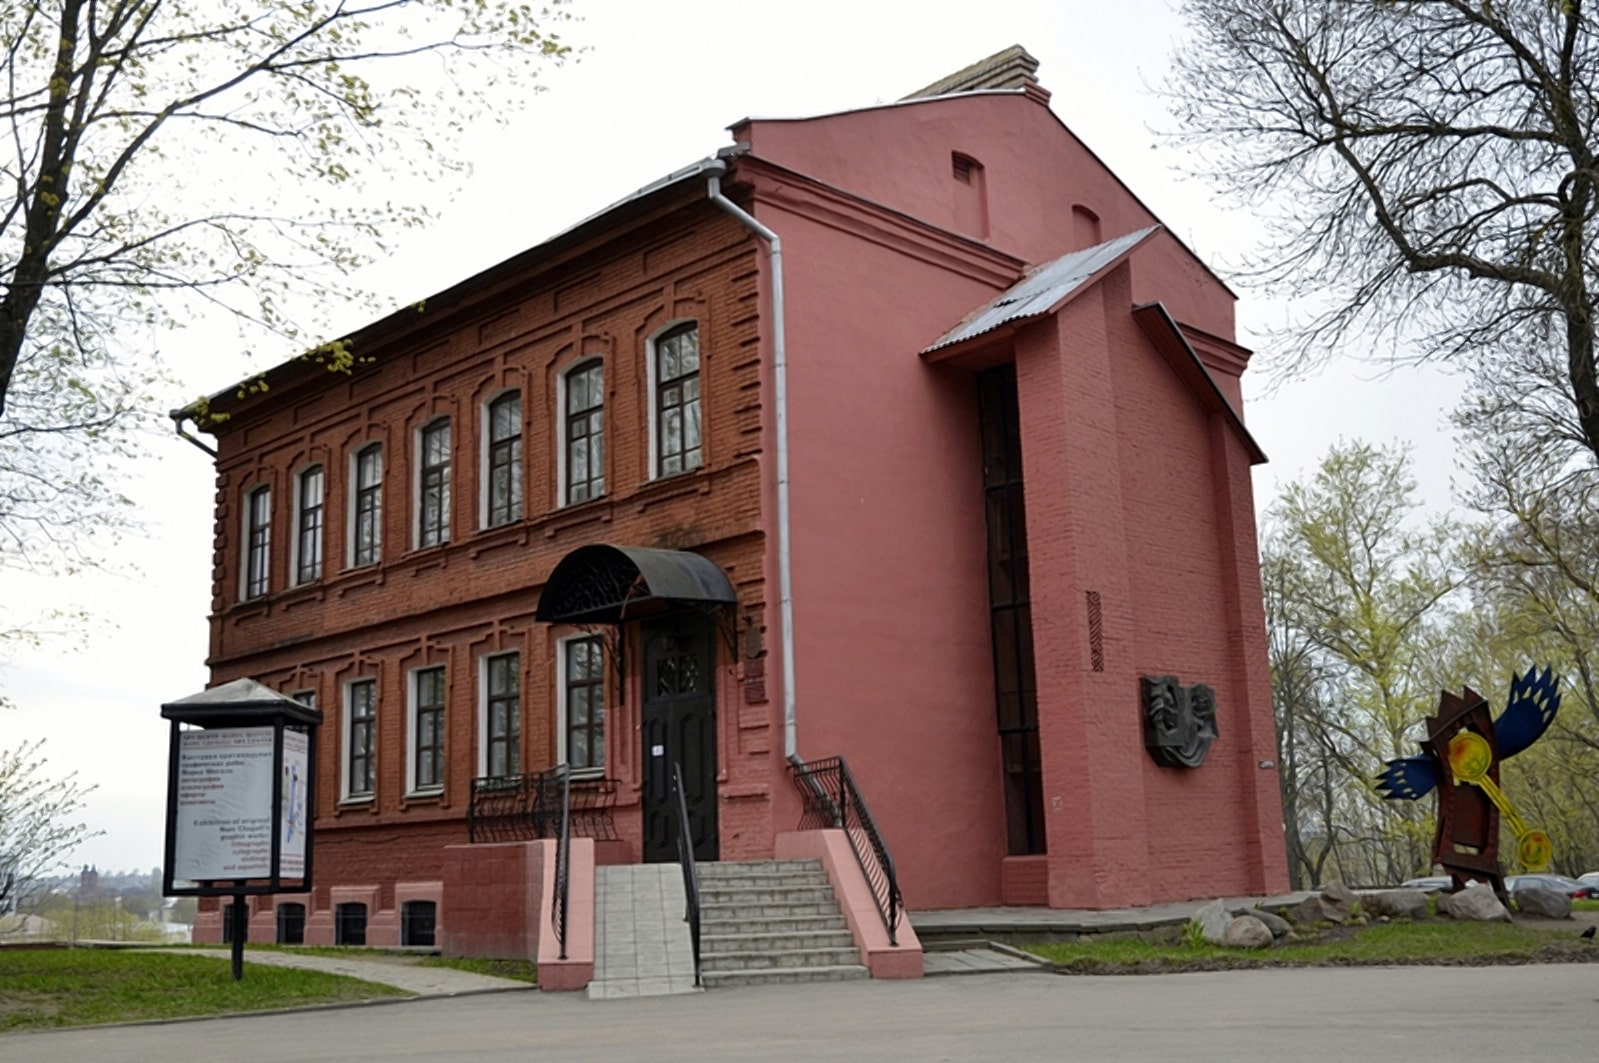 Шагаловский центр в Витебске